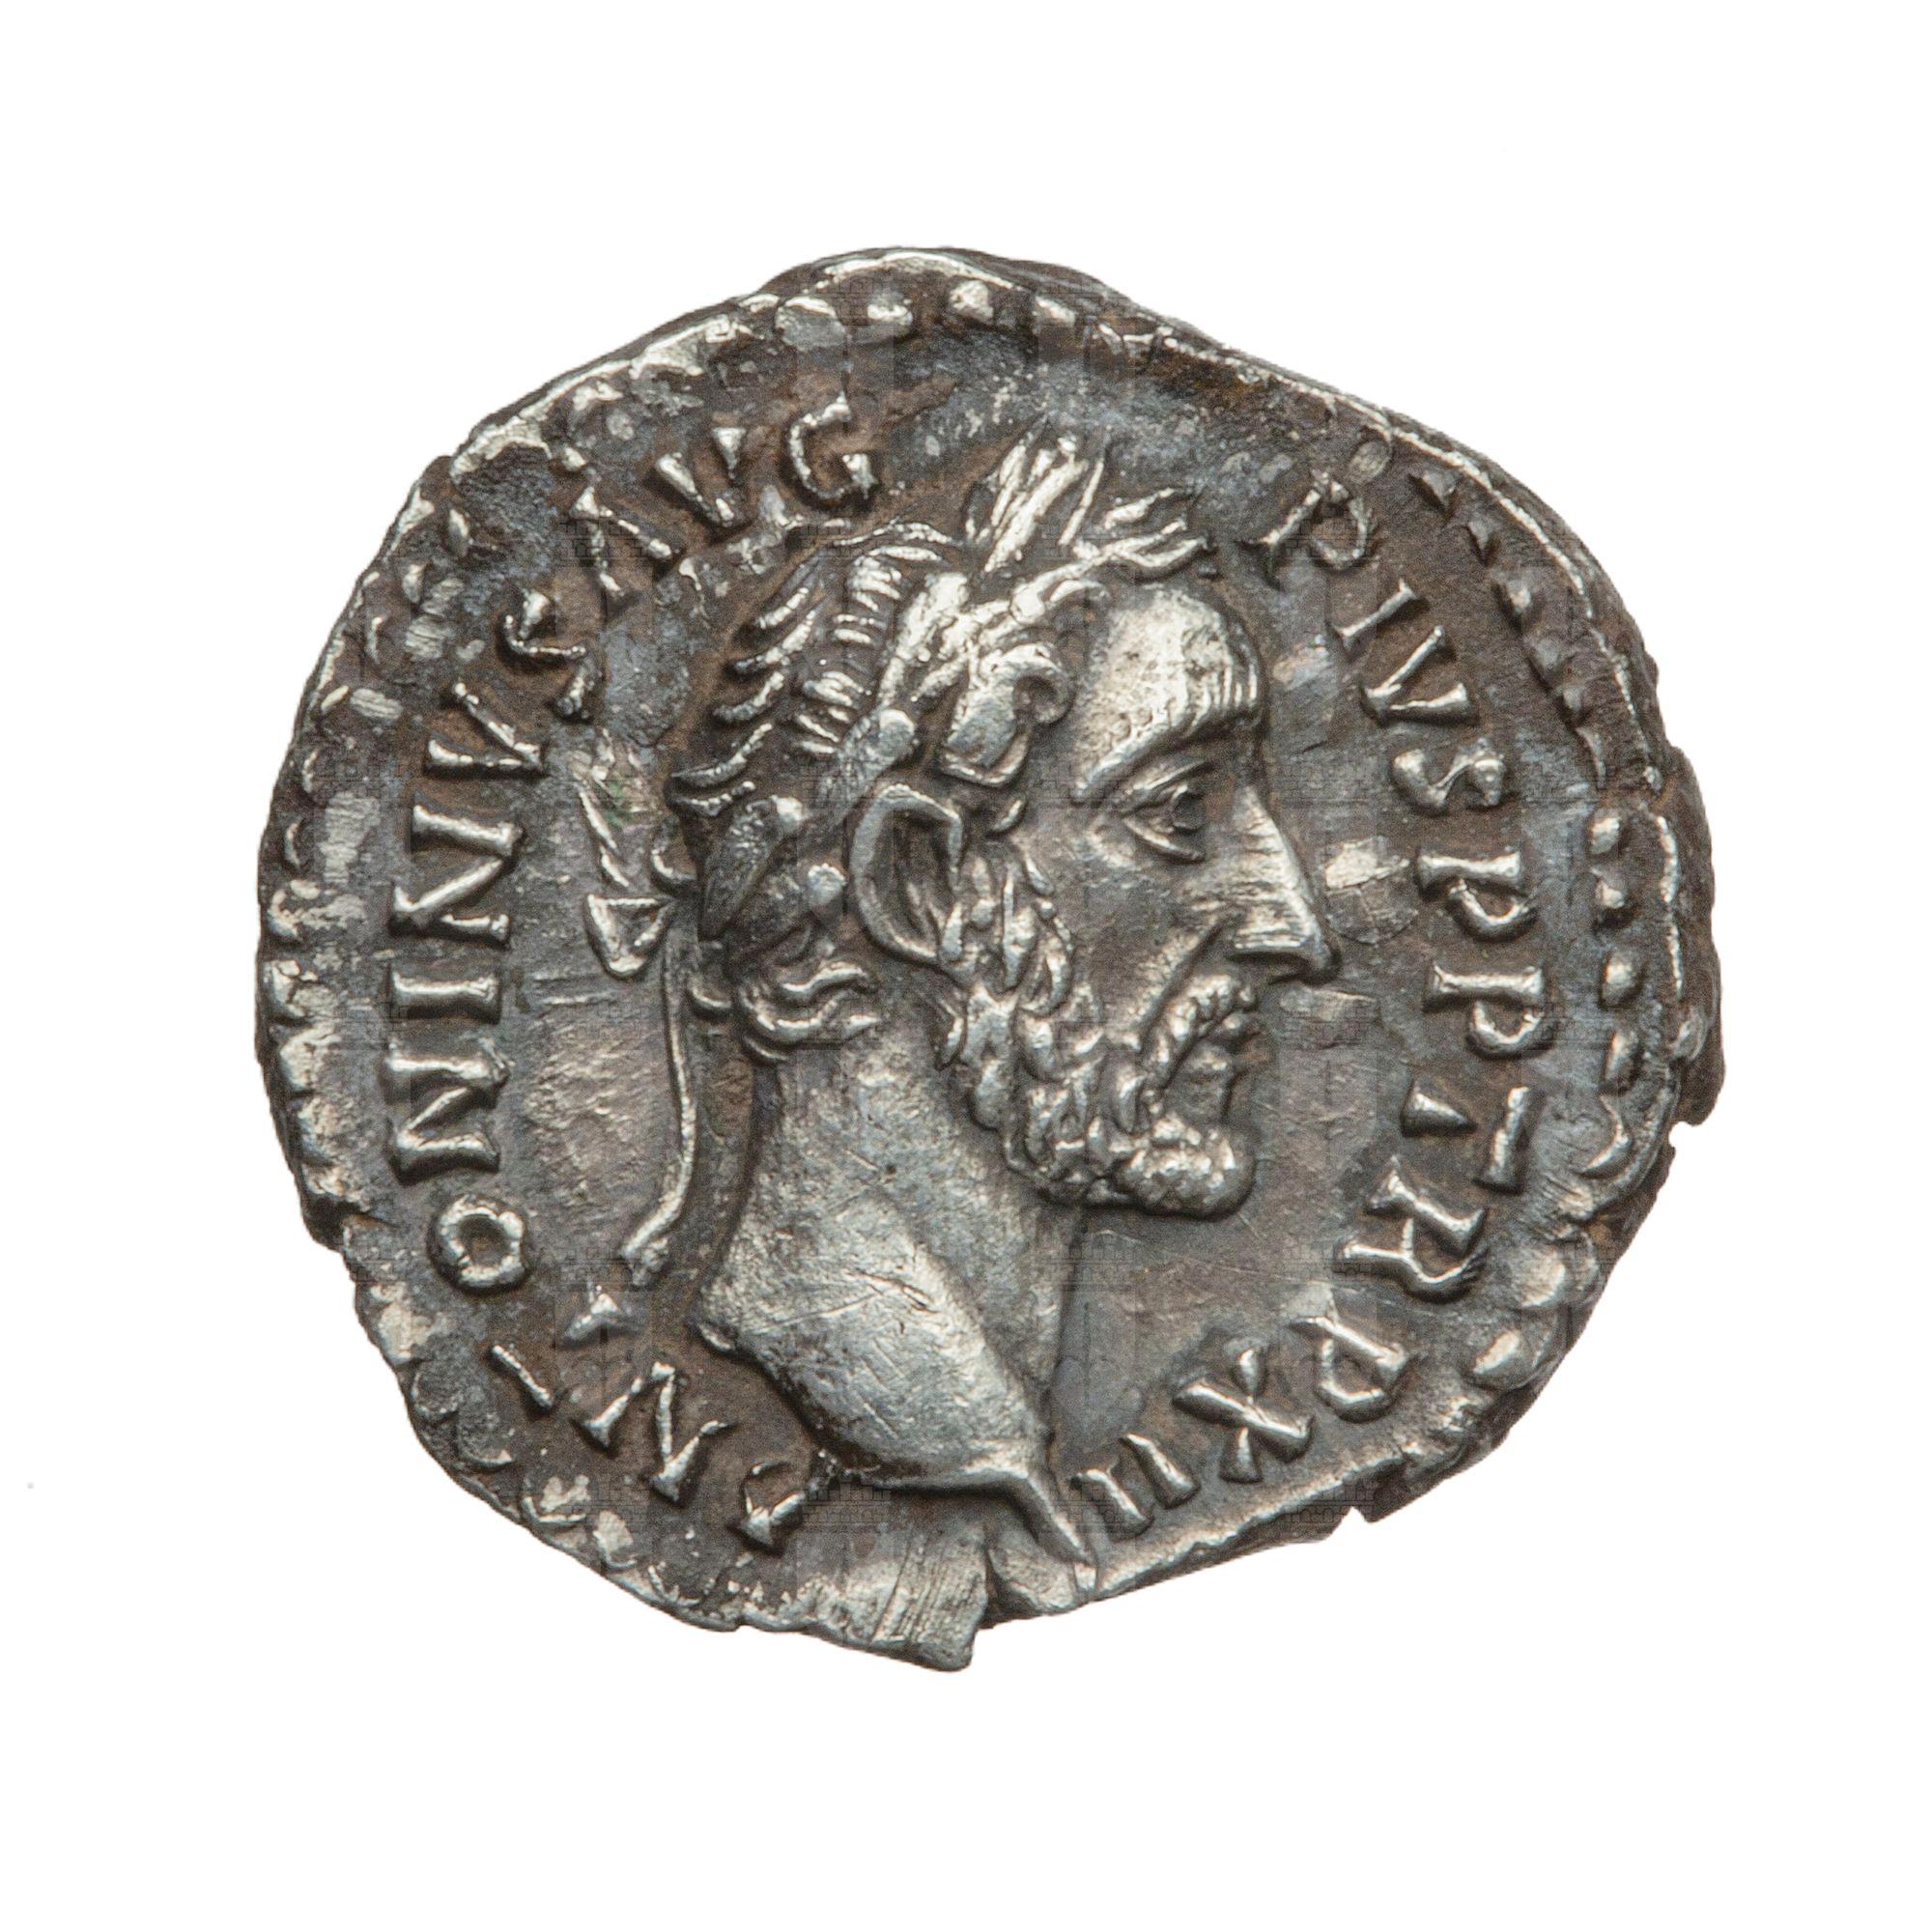 https://catalogomusei.comune.trieste.it/samira/resource/image/reperti-archeologici/Roma 688 D Antonino pio.jpg?token=65e6c33d3e909